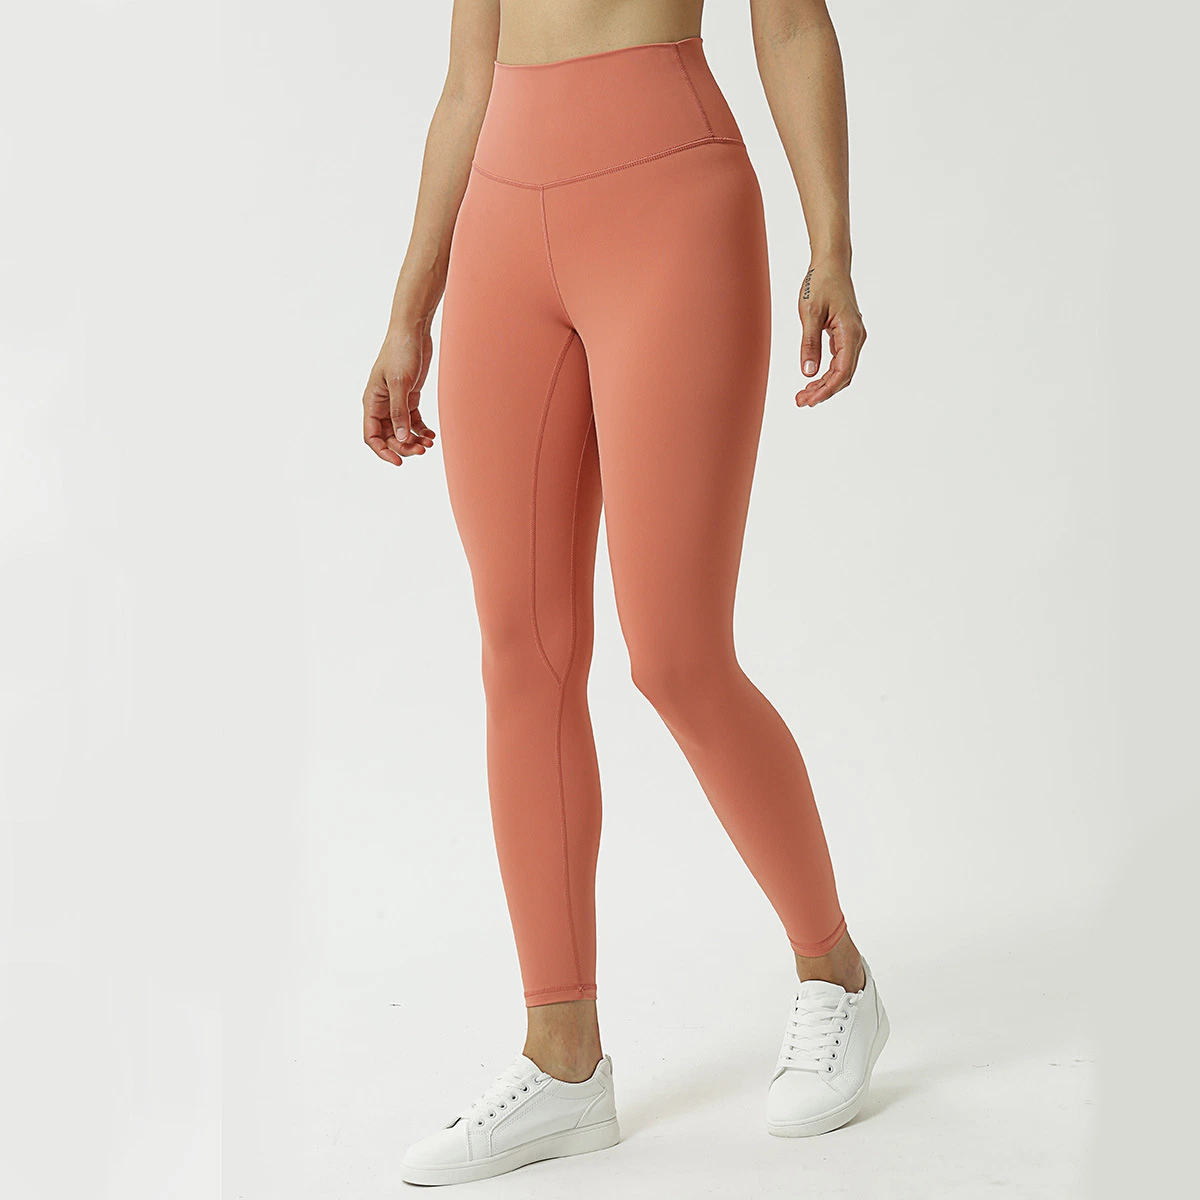 OEM Fabrik Gym Kleidung Yoga Hosen Frauen Sport tragen